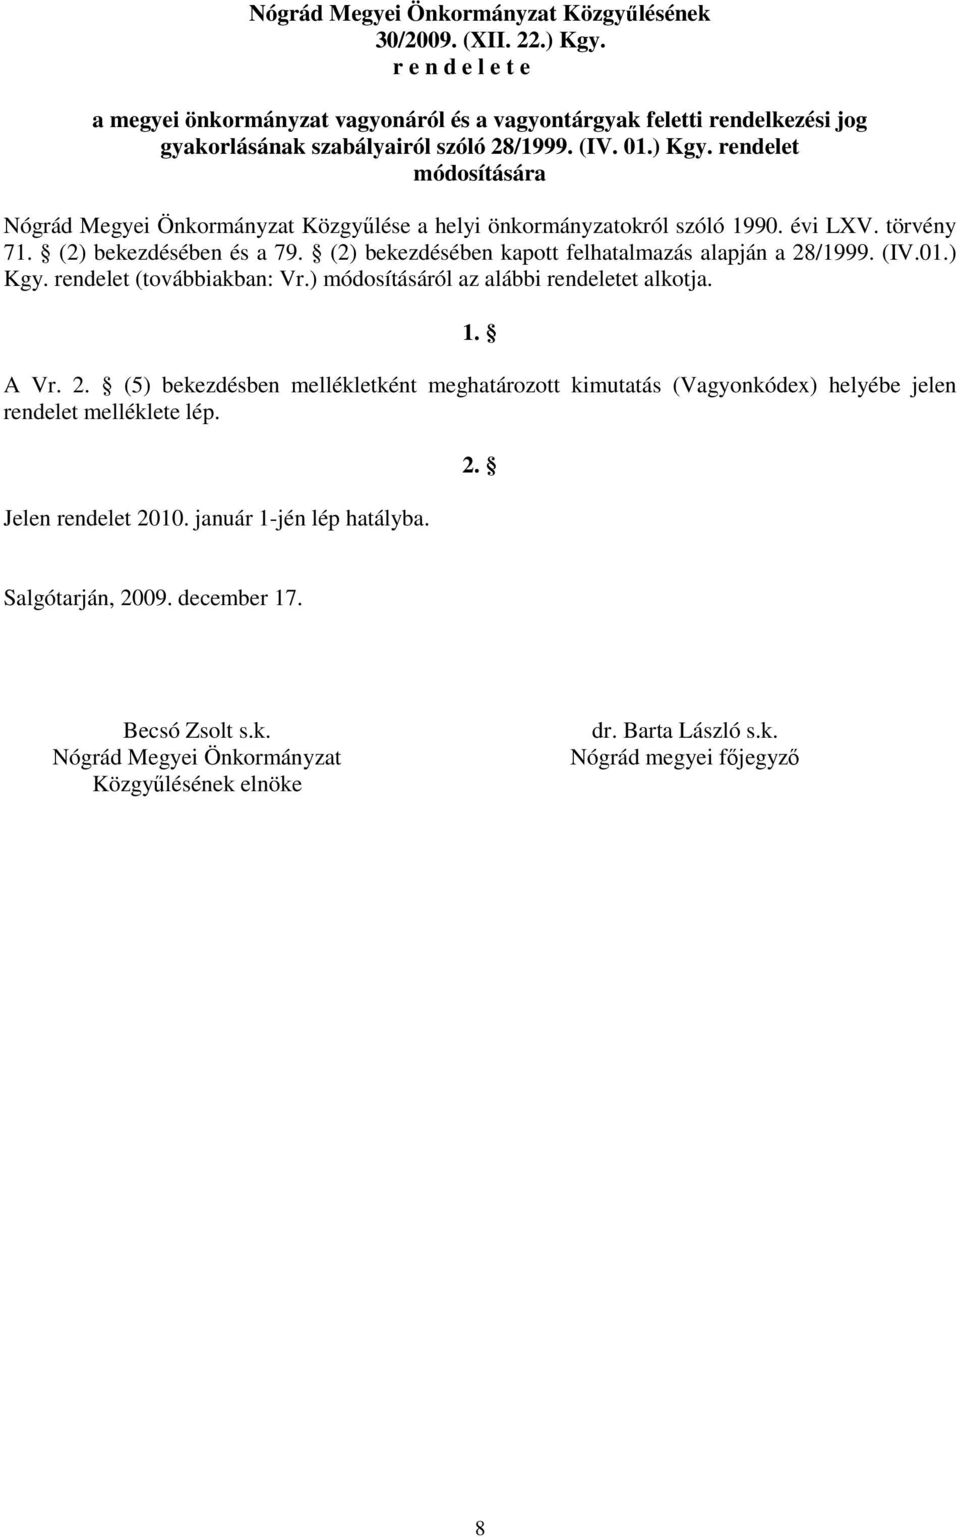 rendelet módosítására Nógrád Megyei Önkormányzat Közgyőlése a helyi önkormányzatokról szóló 1990. évi LXV. törvény 71. (2) bekezdésében és a 79.